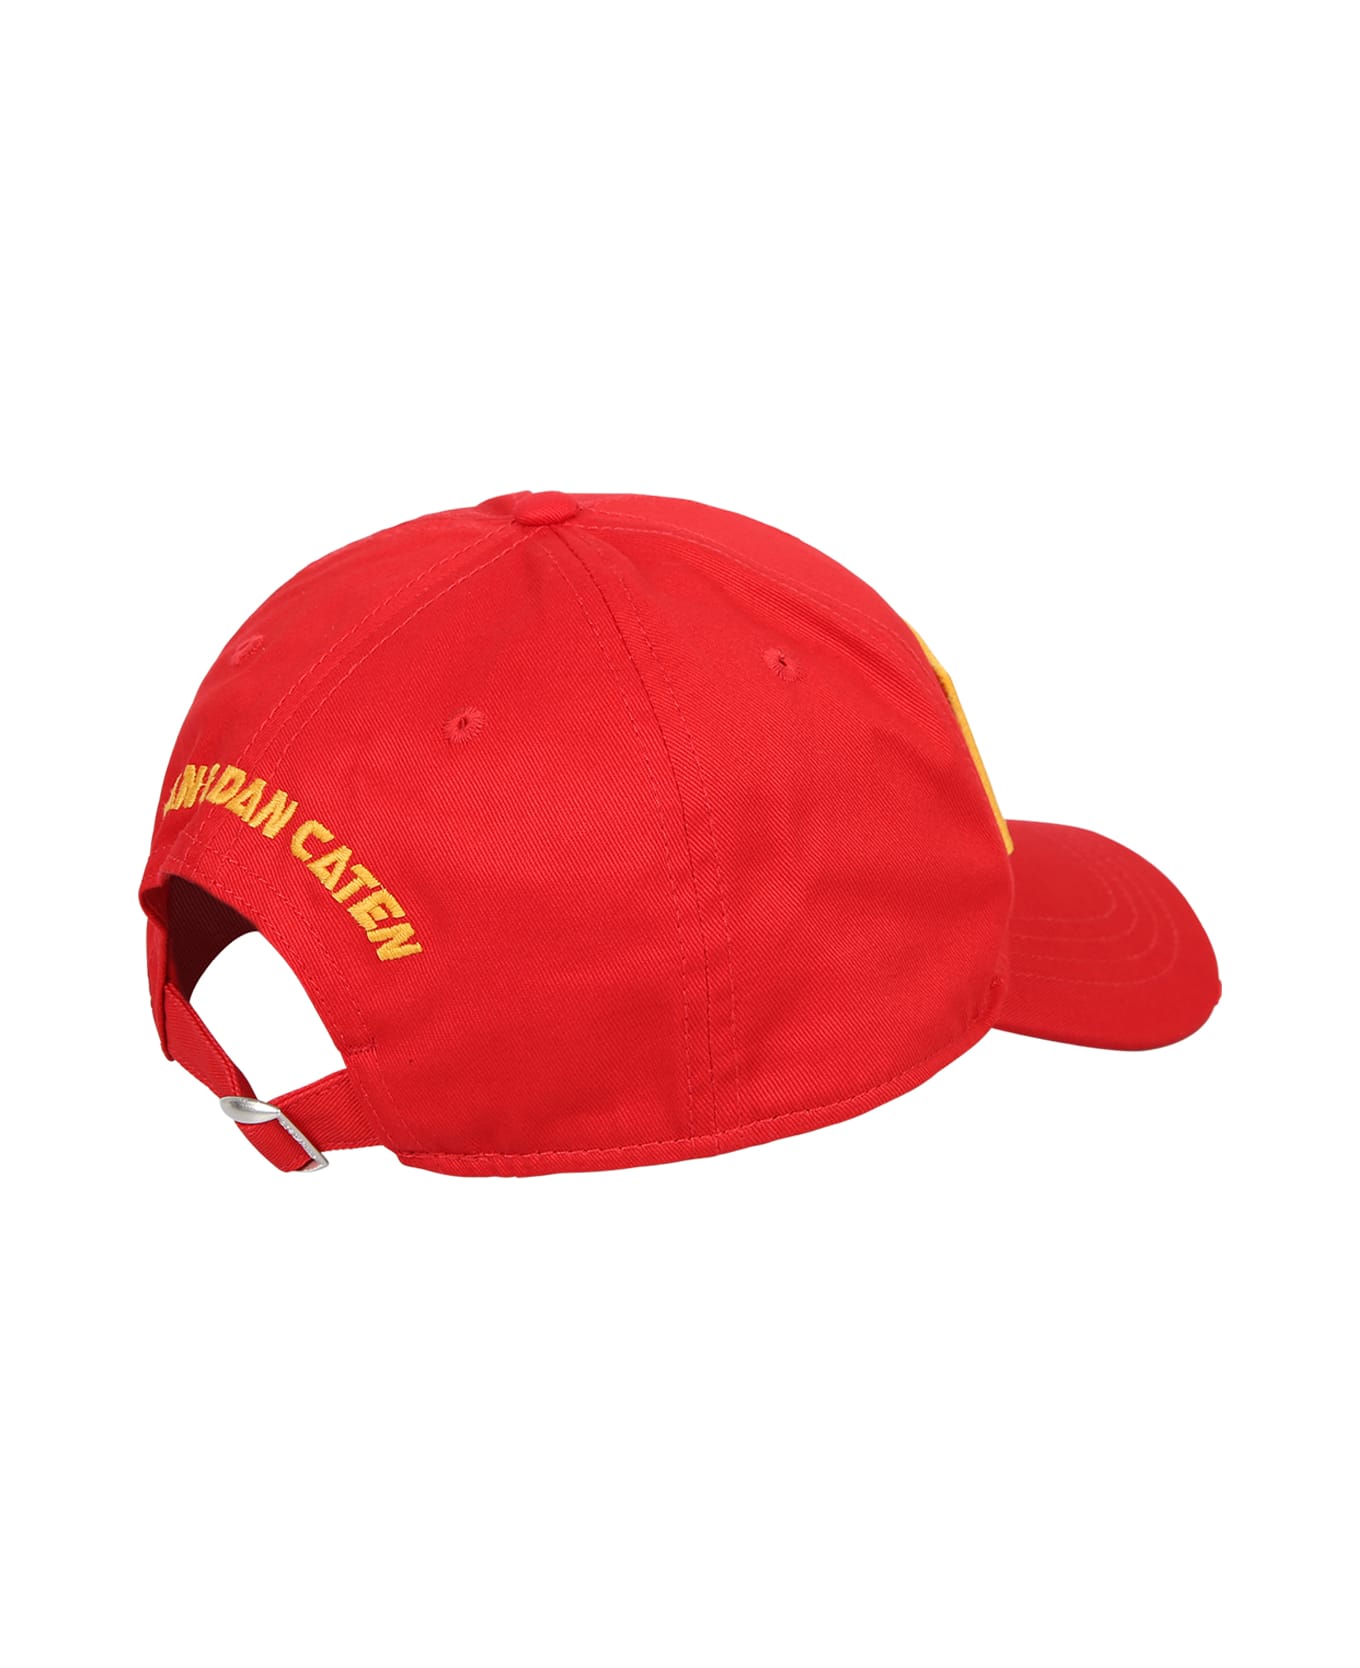 Dsquared2 Cappello Baseball Rosso/giallo - Red